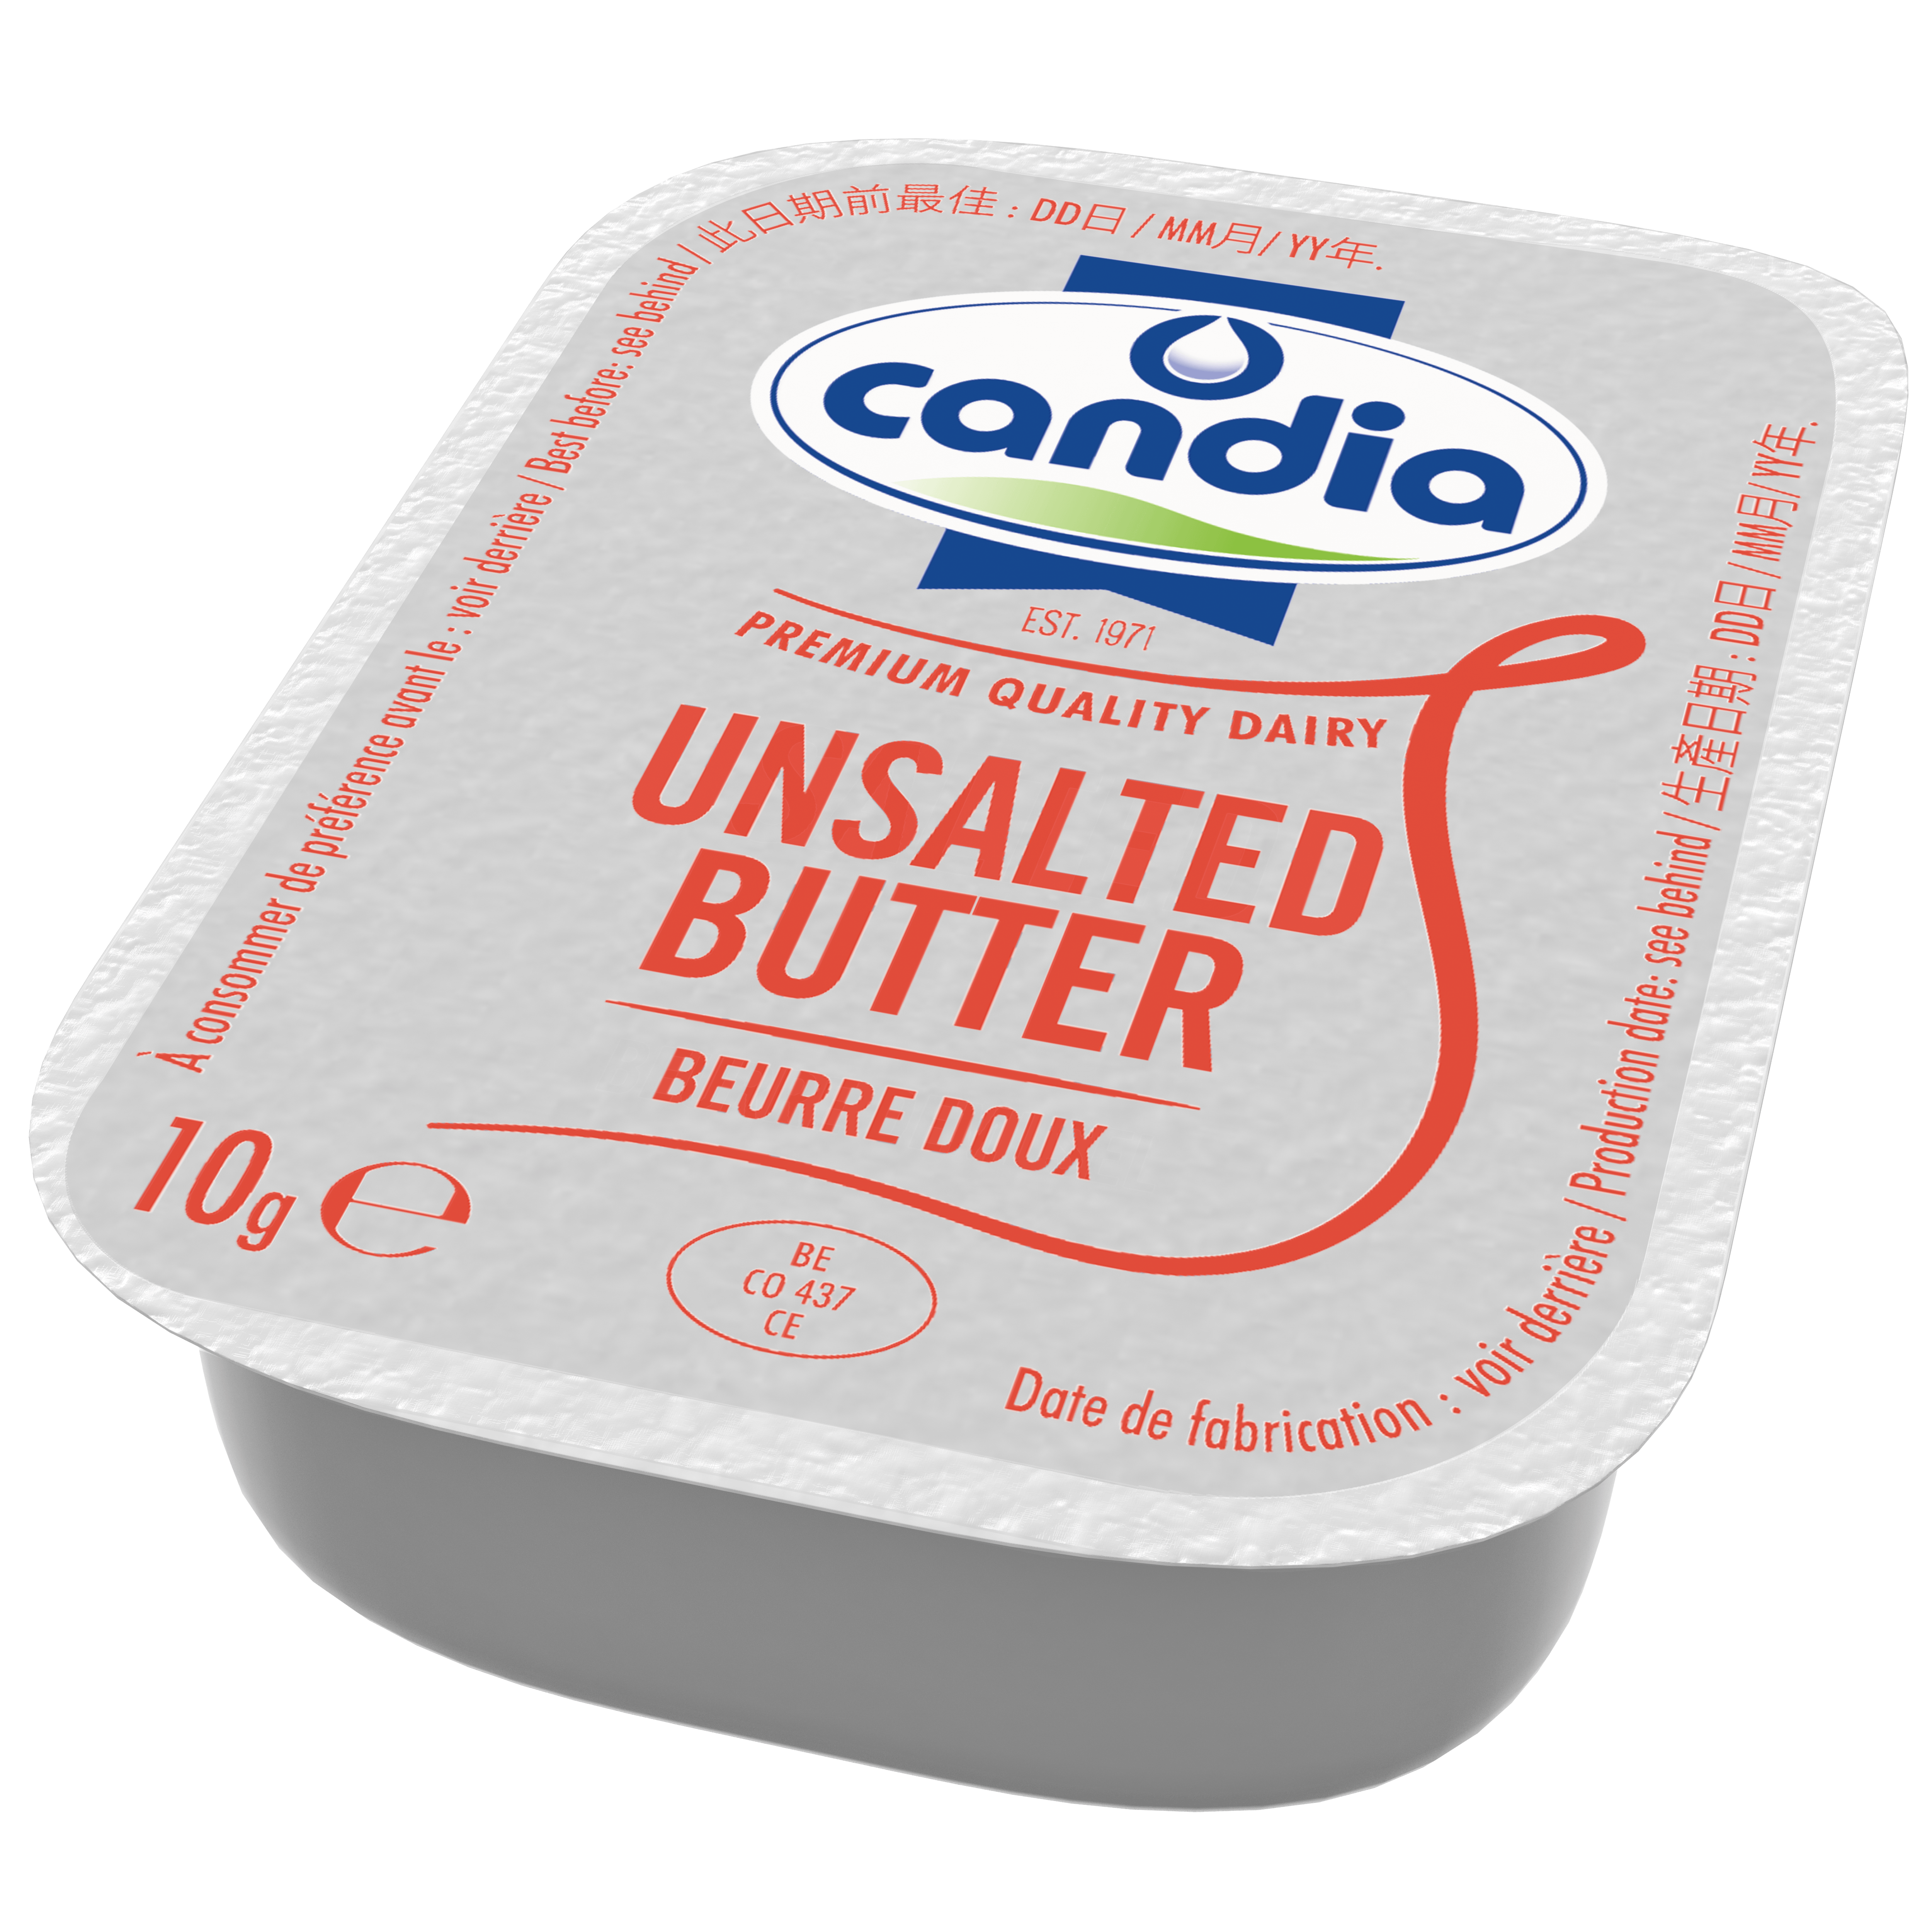 트레디셔널 무염 버터